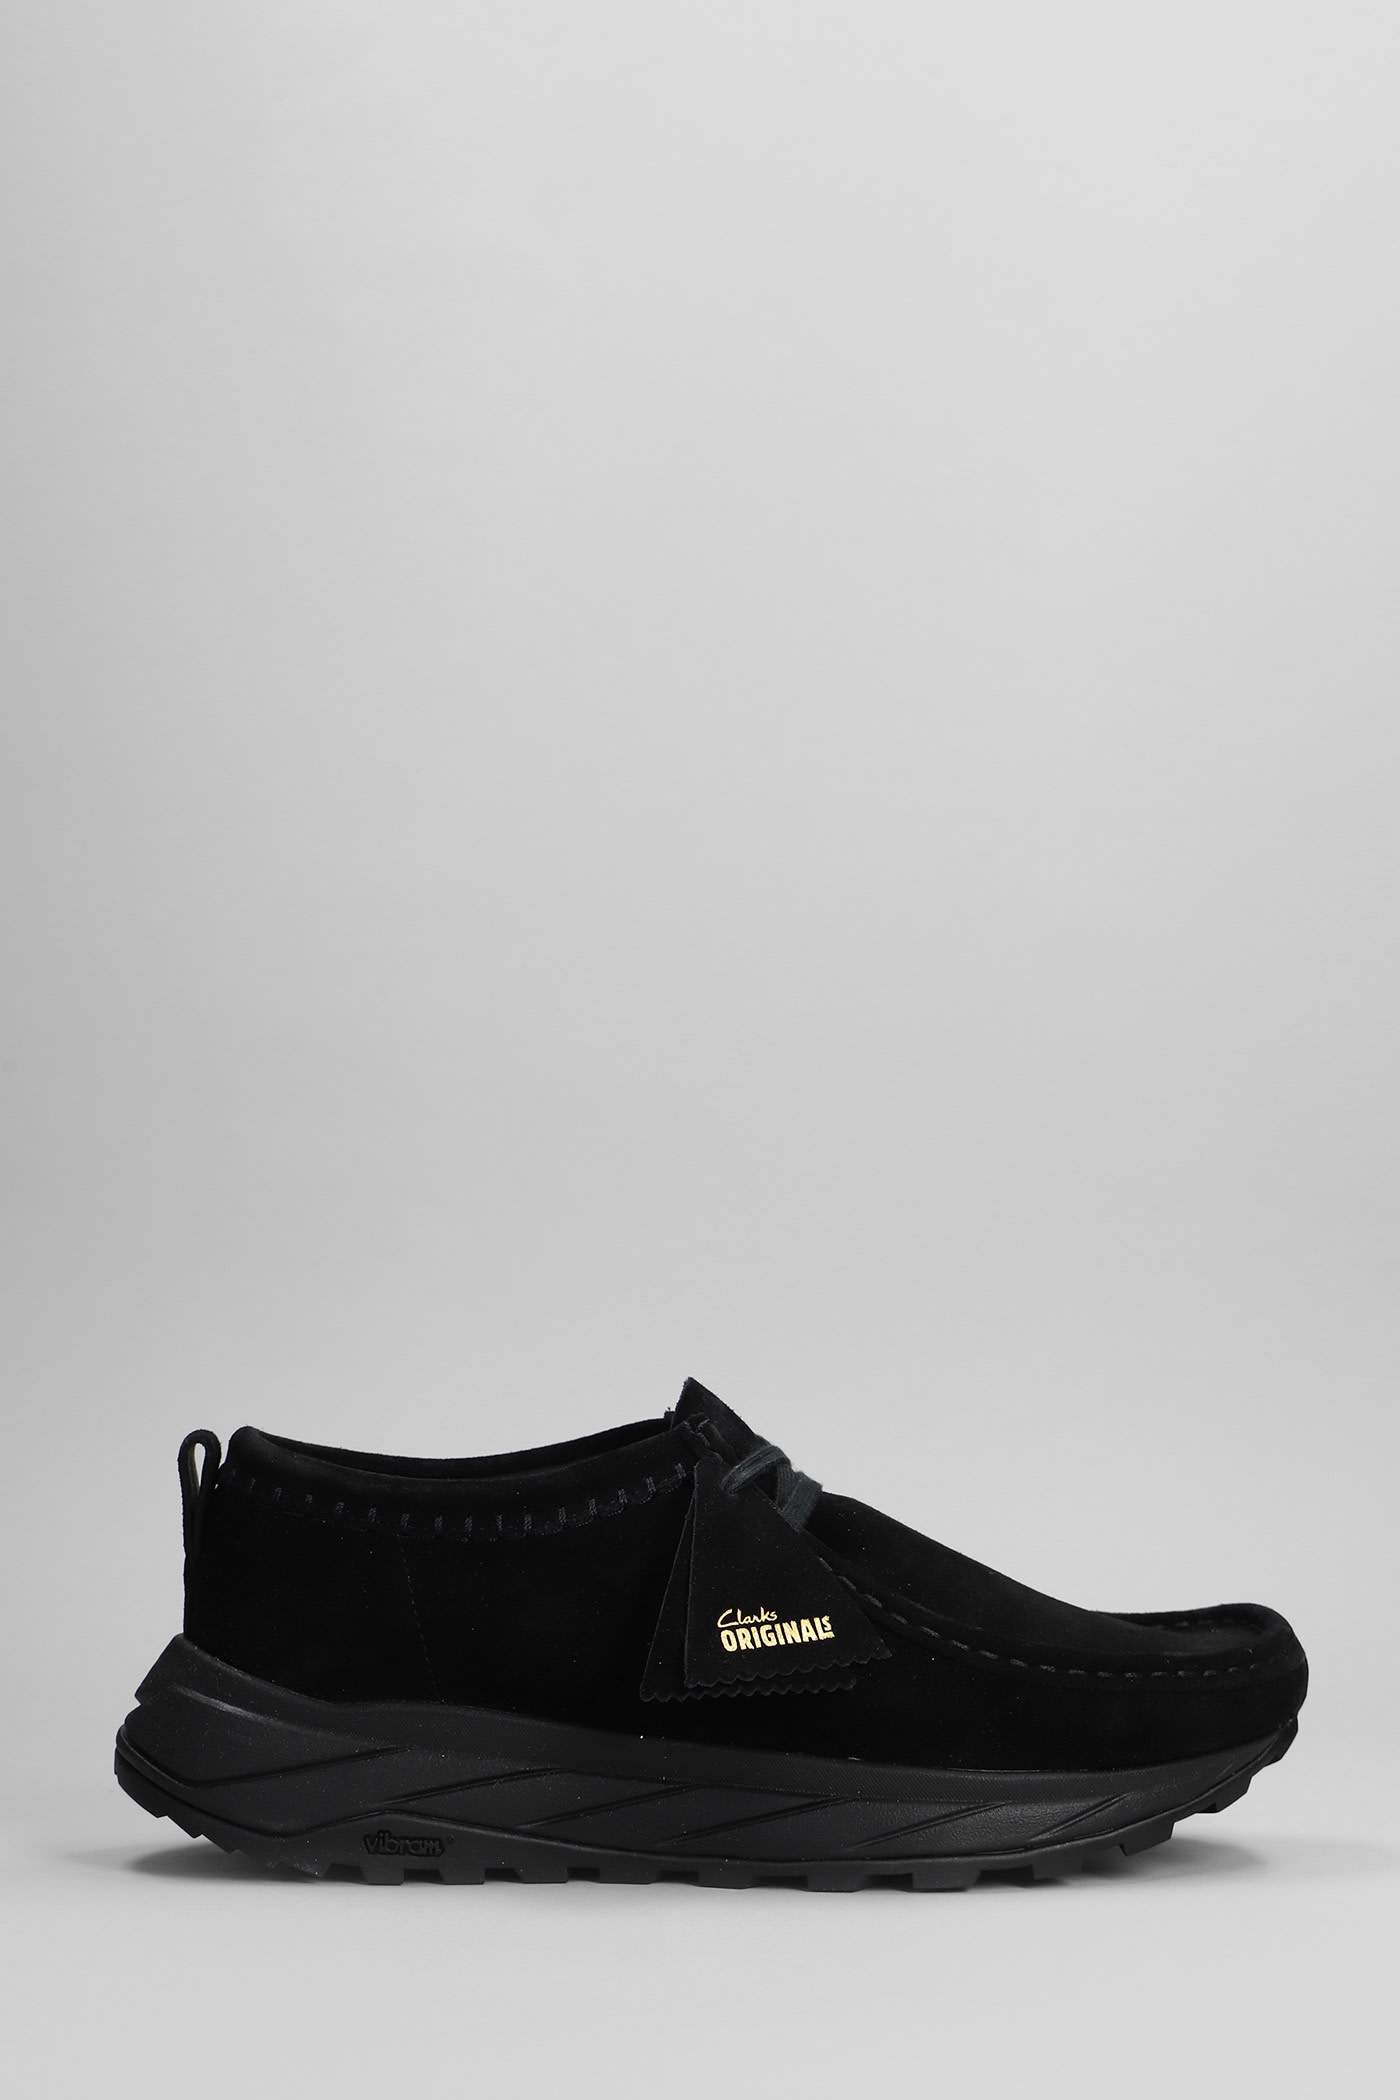 Walla Eden Lo Sneakers In Black Suede